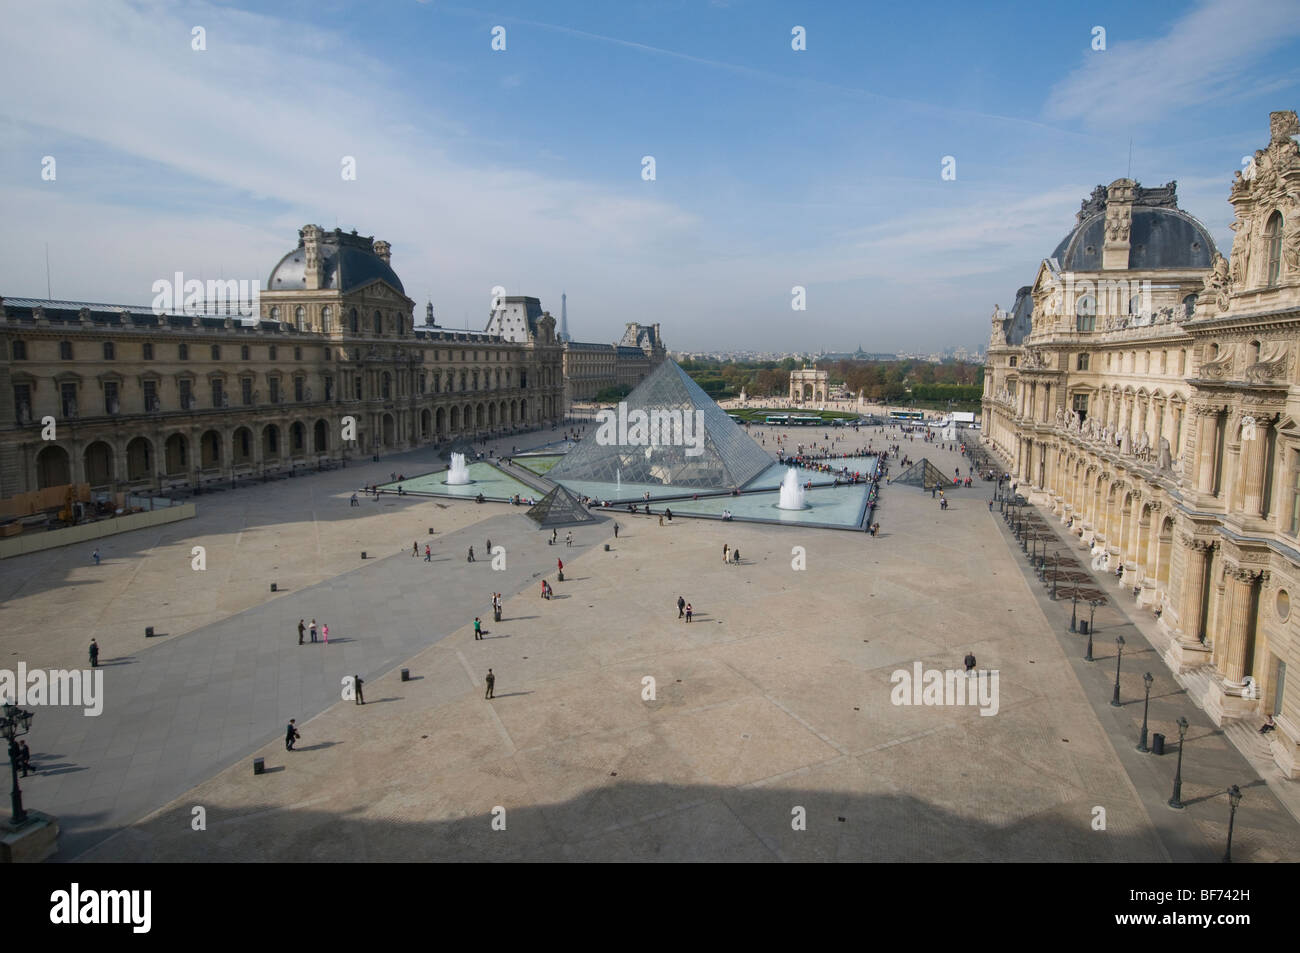 Palais Royal, Paris the home of the Musée du Louvre art gallery Stock Photo